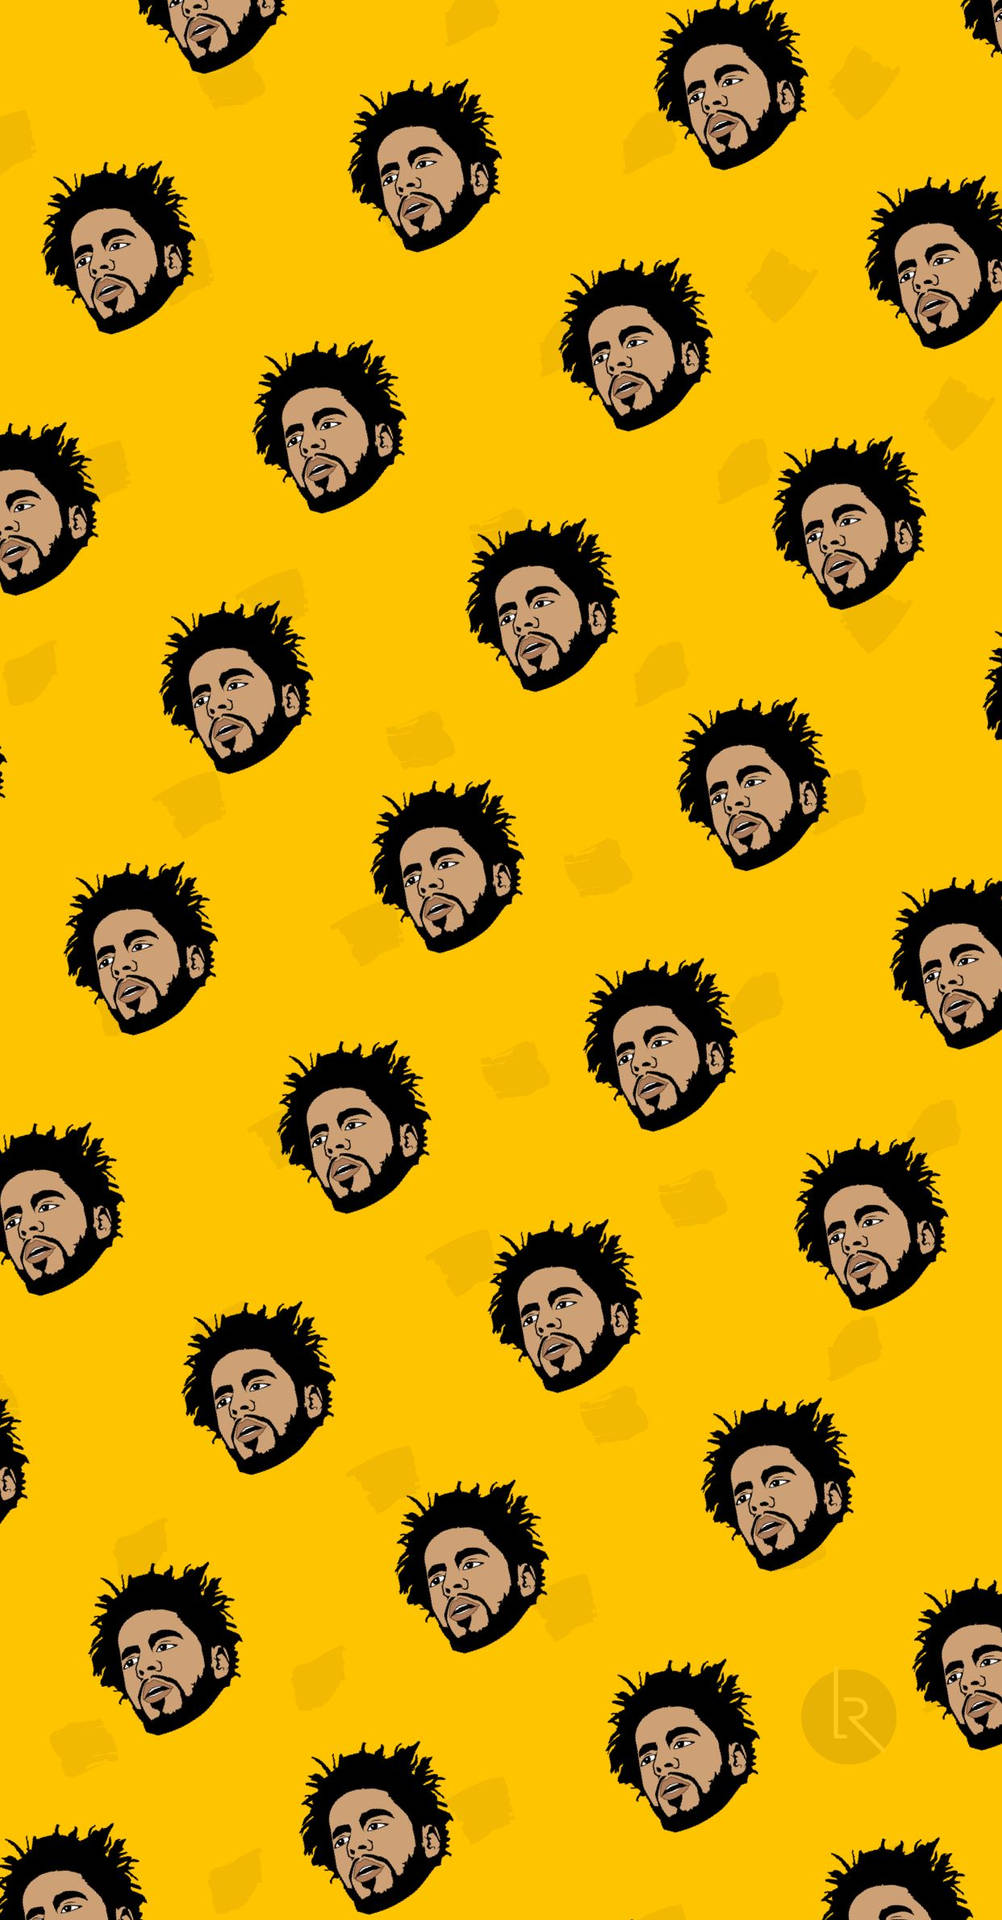 J Cole Face Pattern Background